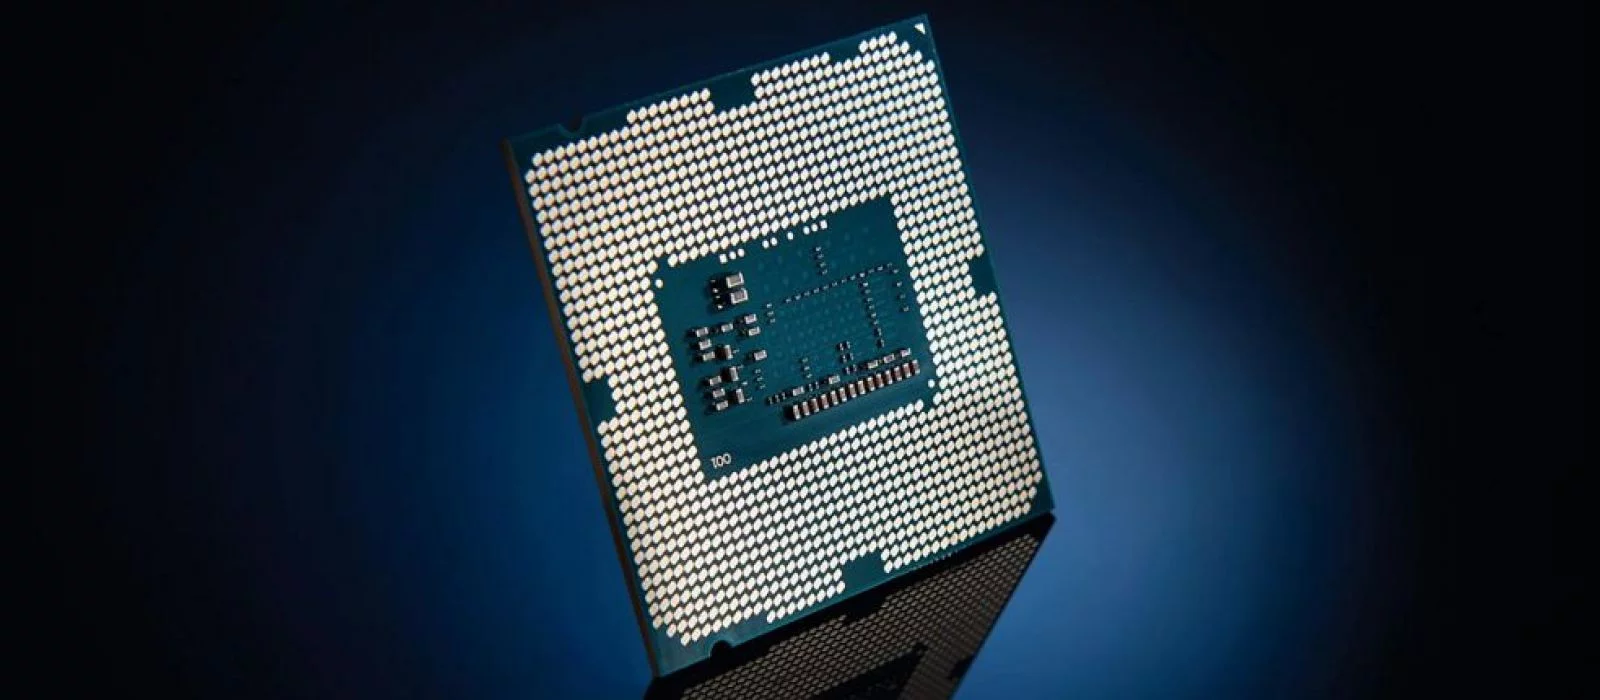 Процессор 9 поколения. Intel i5 9300h. Intel® Core™ i5-9300h. Intel Raptor Lake под микроскопом. Фото Интел 1366 678.